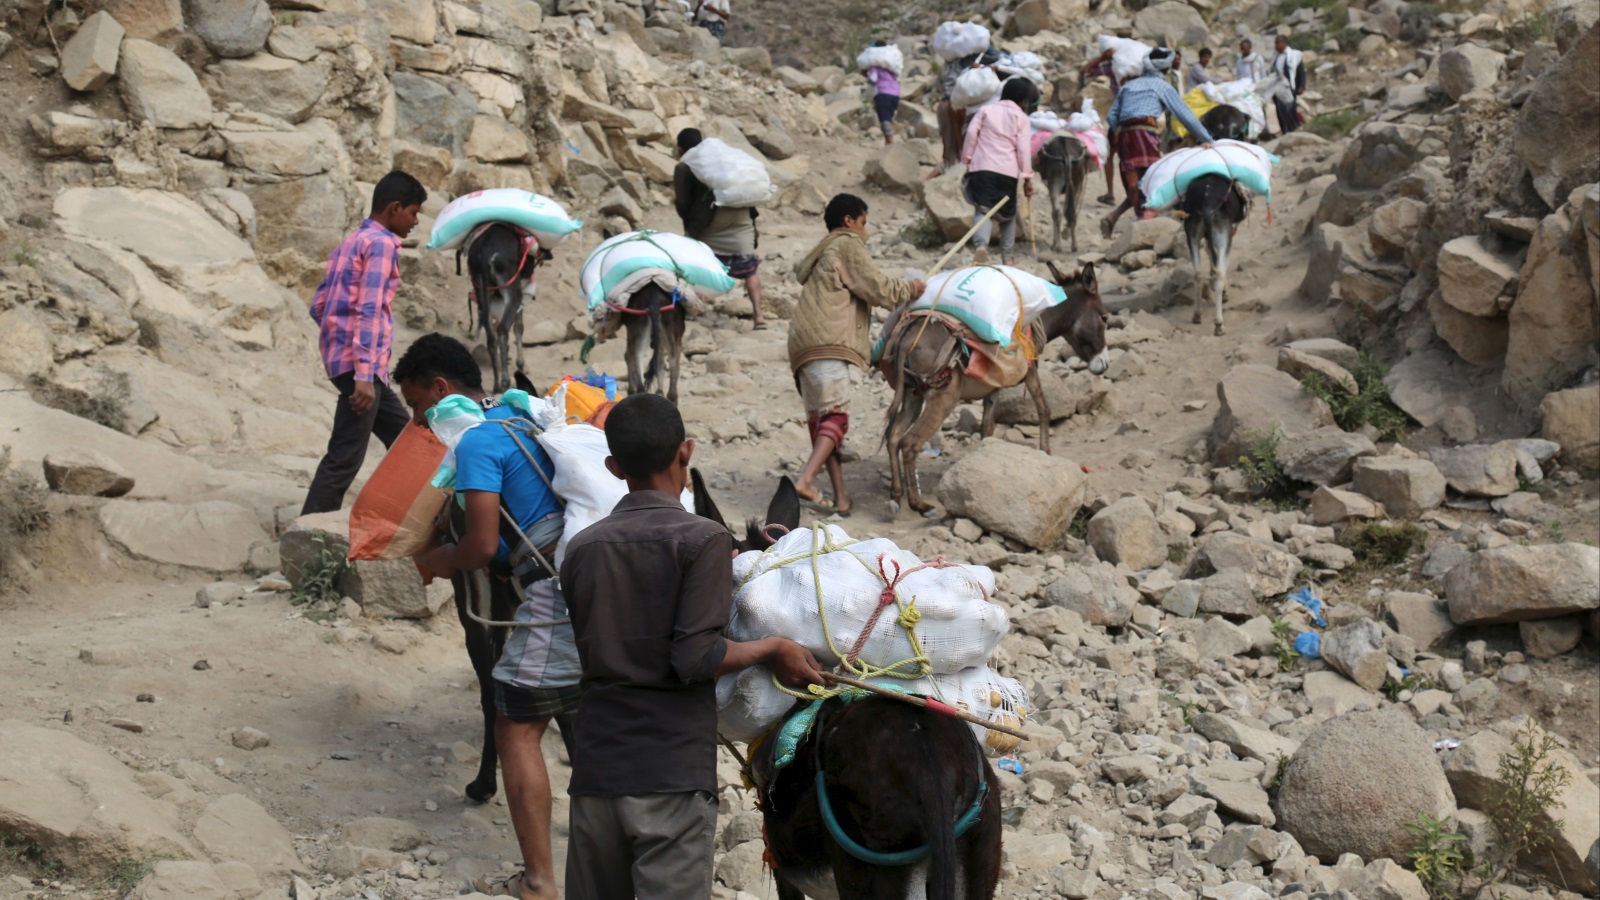 ‪في الطريق الجبلية اليمنية تعجز السيارات عن السير وتفوقها الحمير نفعا وأهمية‬   في الطريق الجبلية اليمنية تعجز السيارات عن السير وتفوقها الحمير نفعا وأهمية (رويترز)